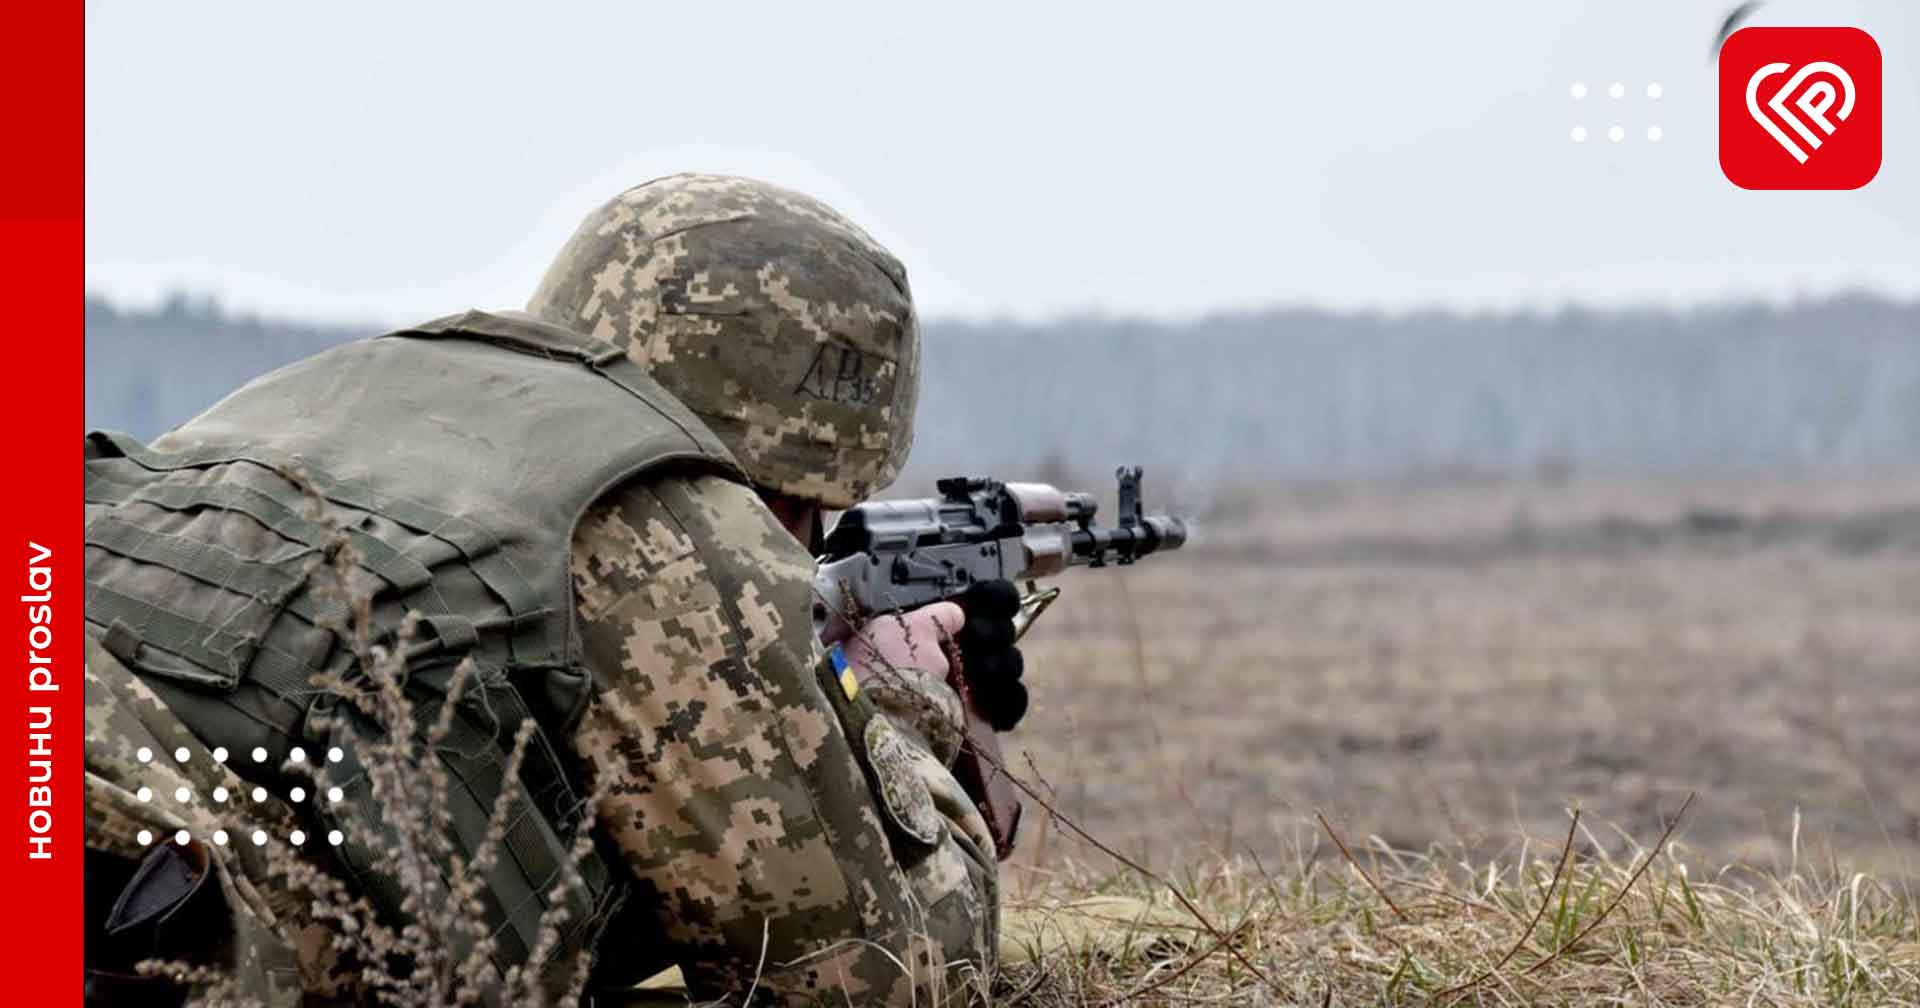 Протягом тижня у Дарницькому районі Києва відбуватимуться тренування оборони міста: закликають зберігати спокій й не фотографувати військових